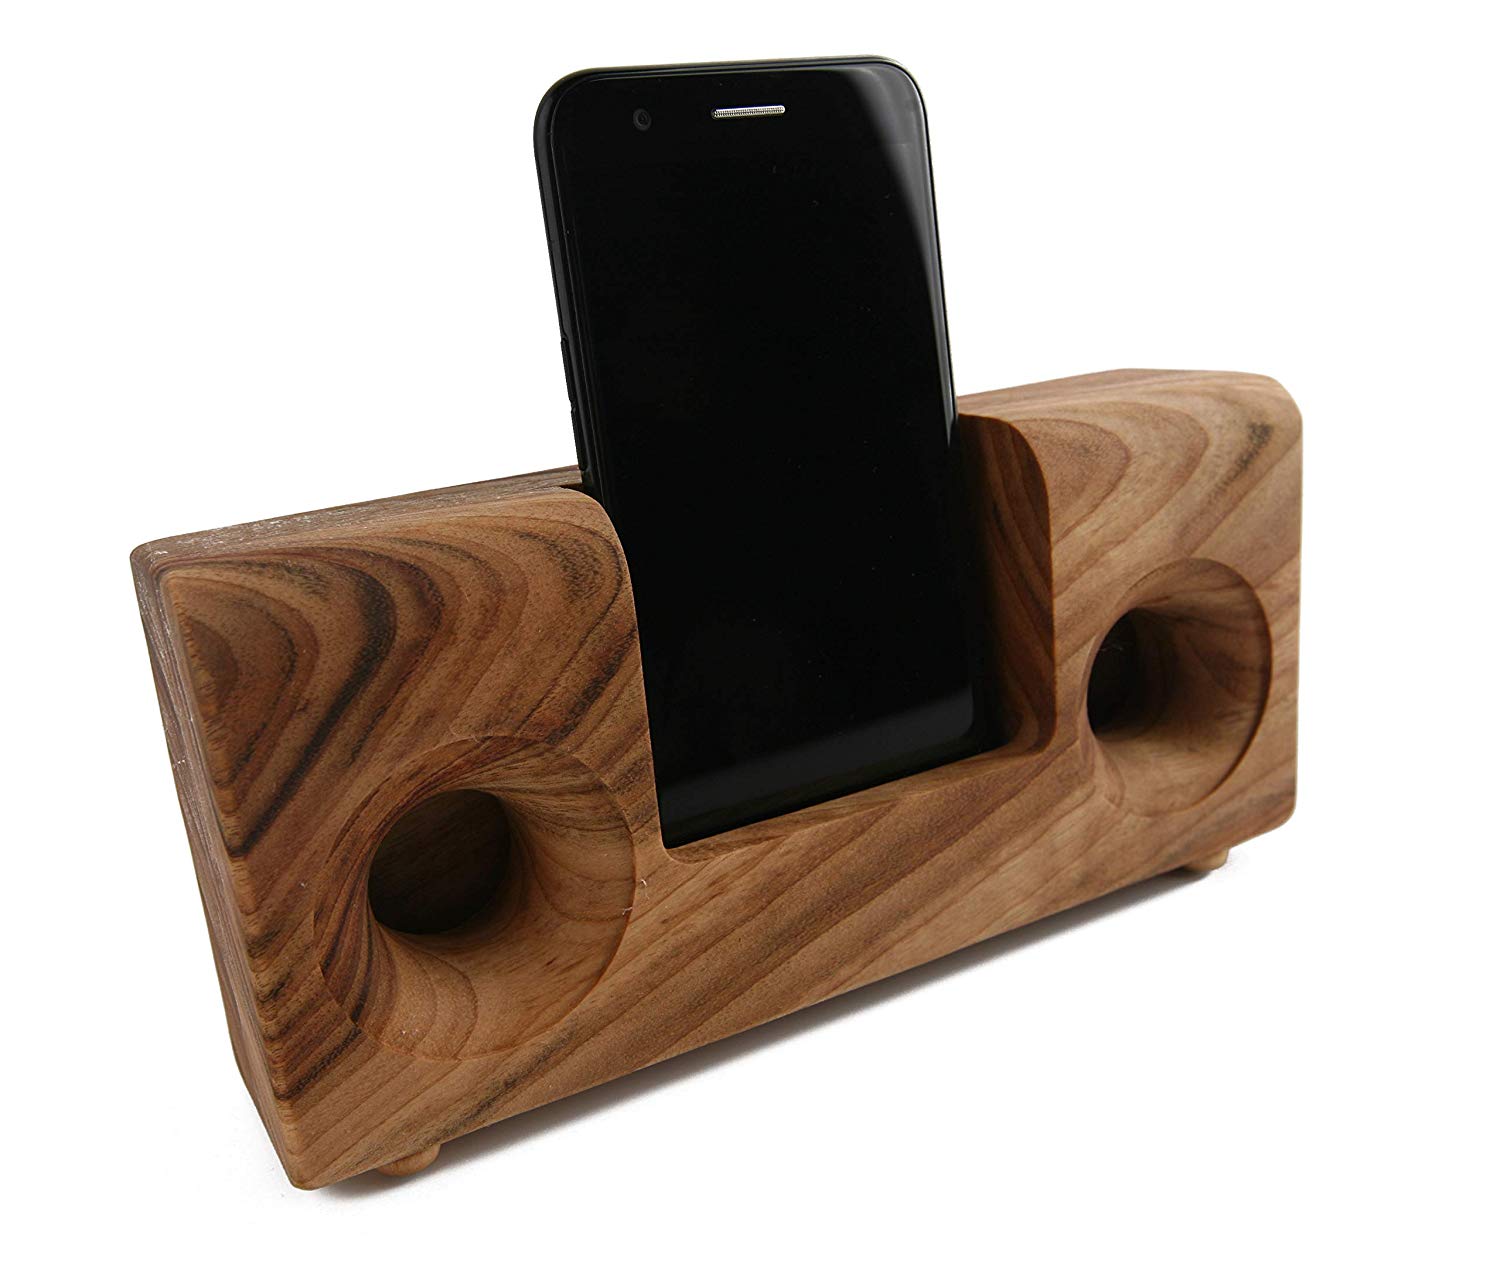 I migliori amplificatori smartphone in legno